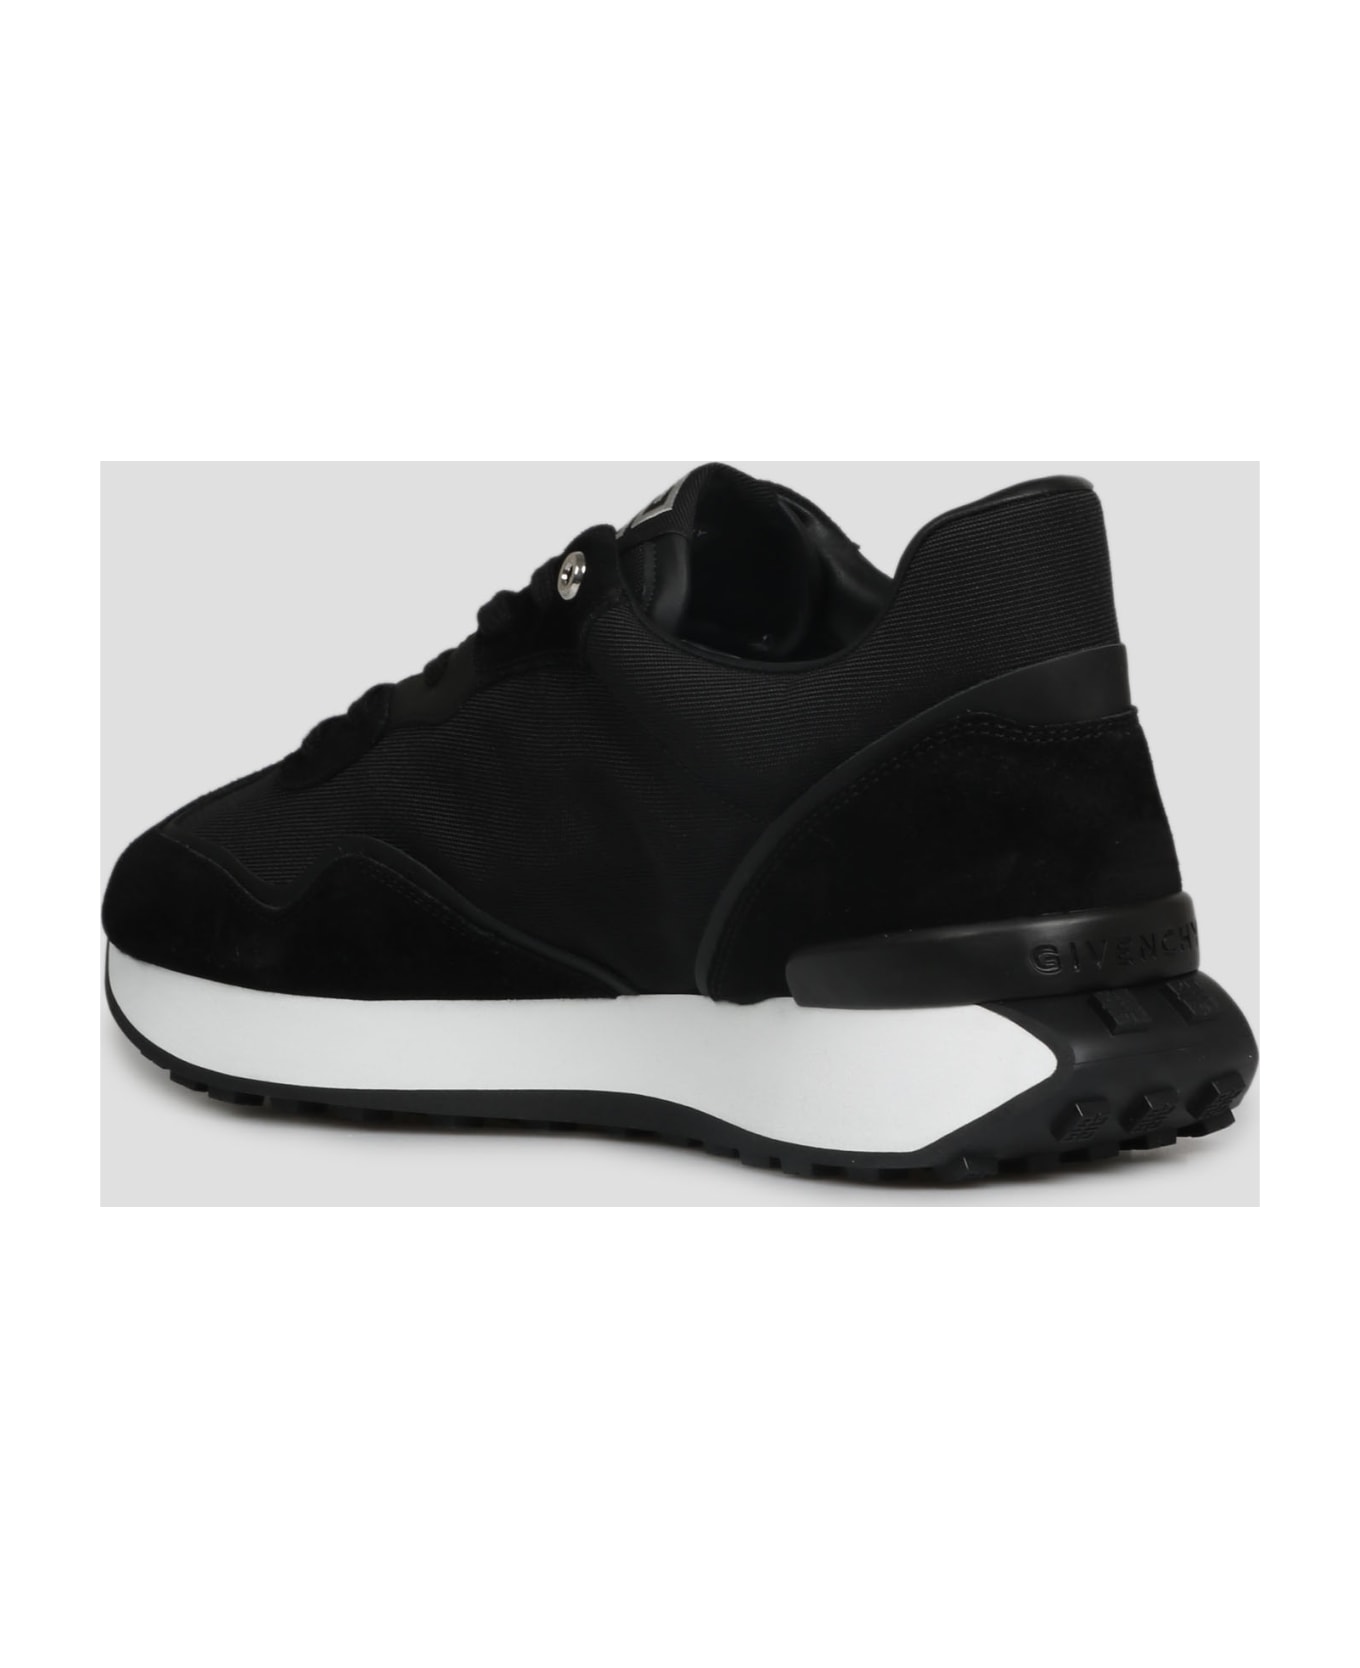 Givenchy Giv Runner Light Sneakers - Black